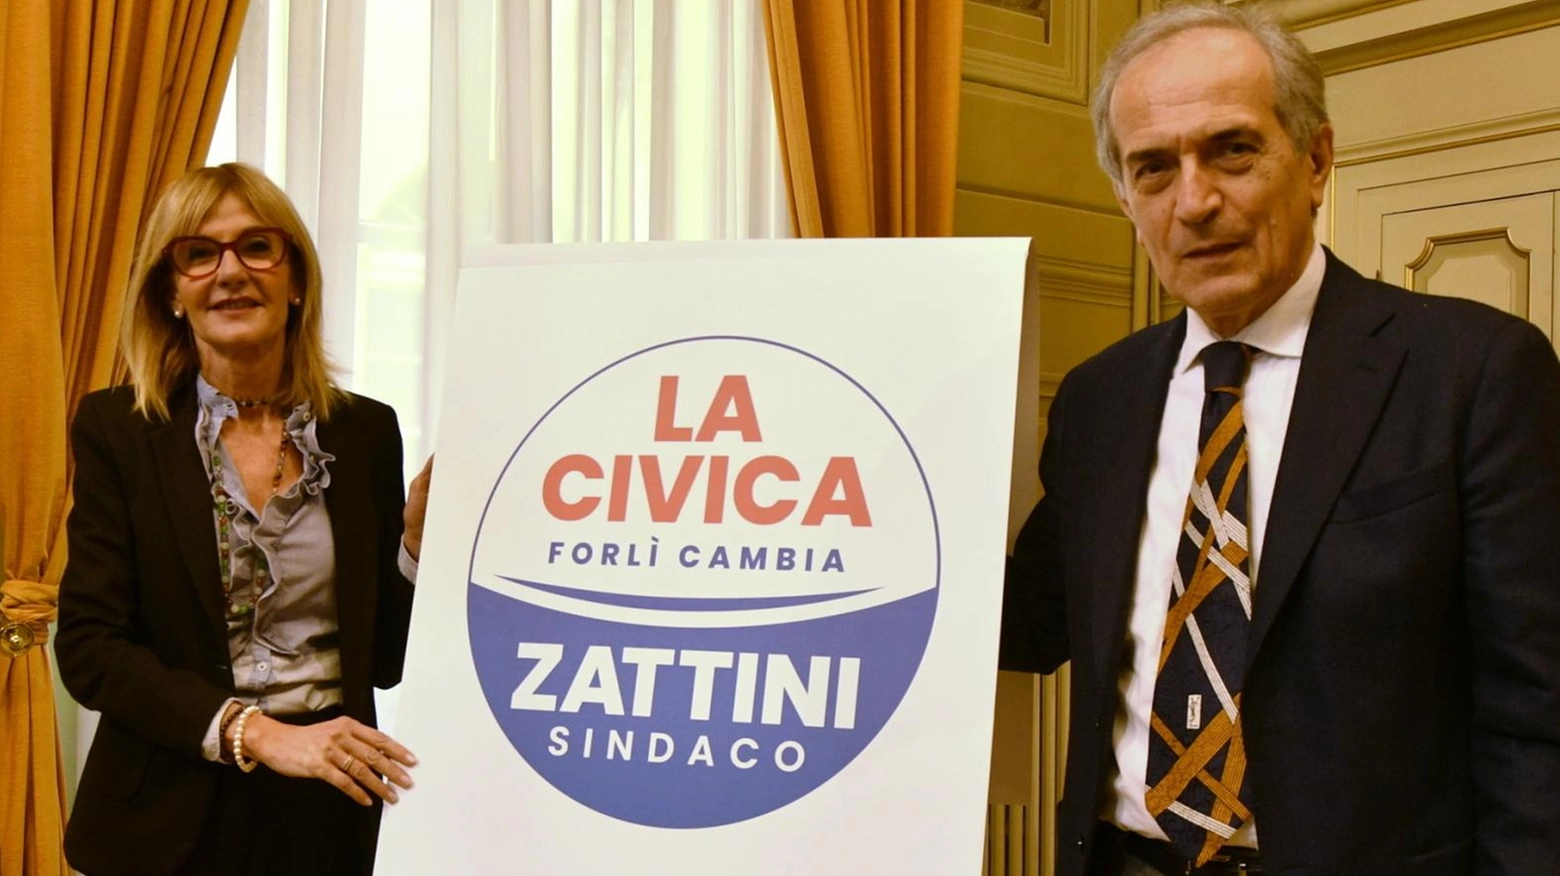 Casara e Zattini puntano su ‘La Civica’: "Tanti vogliono entrare, c’è entusiasmo"